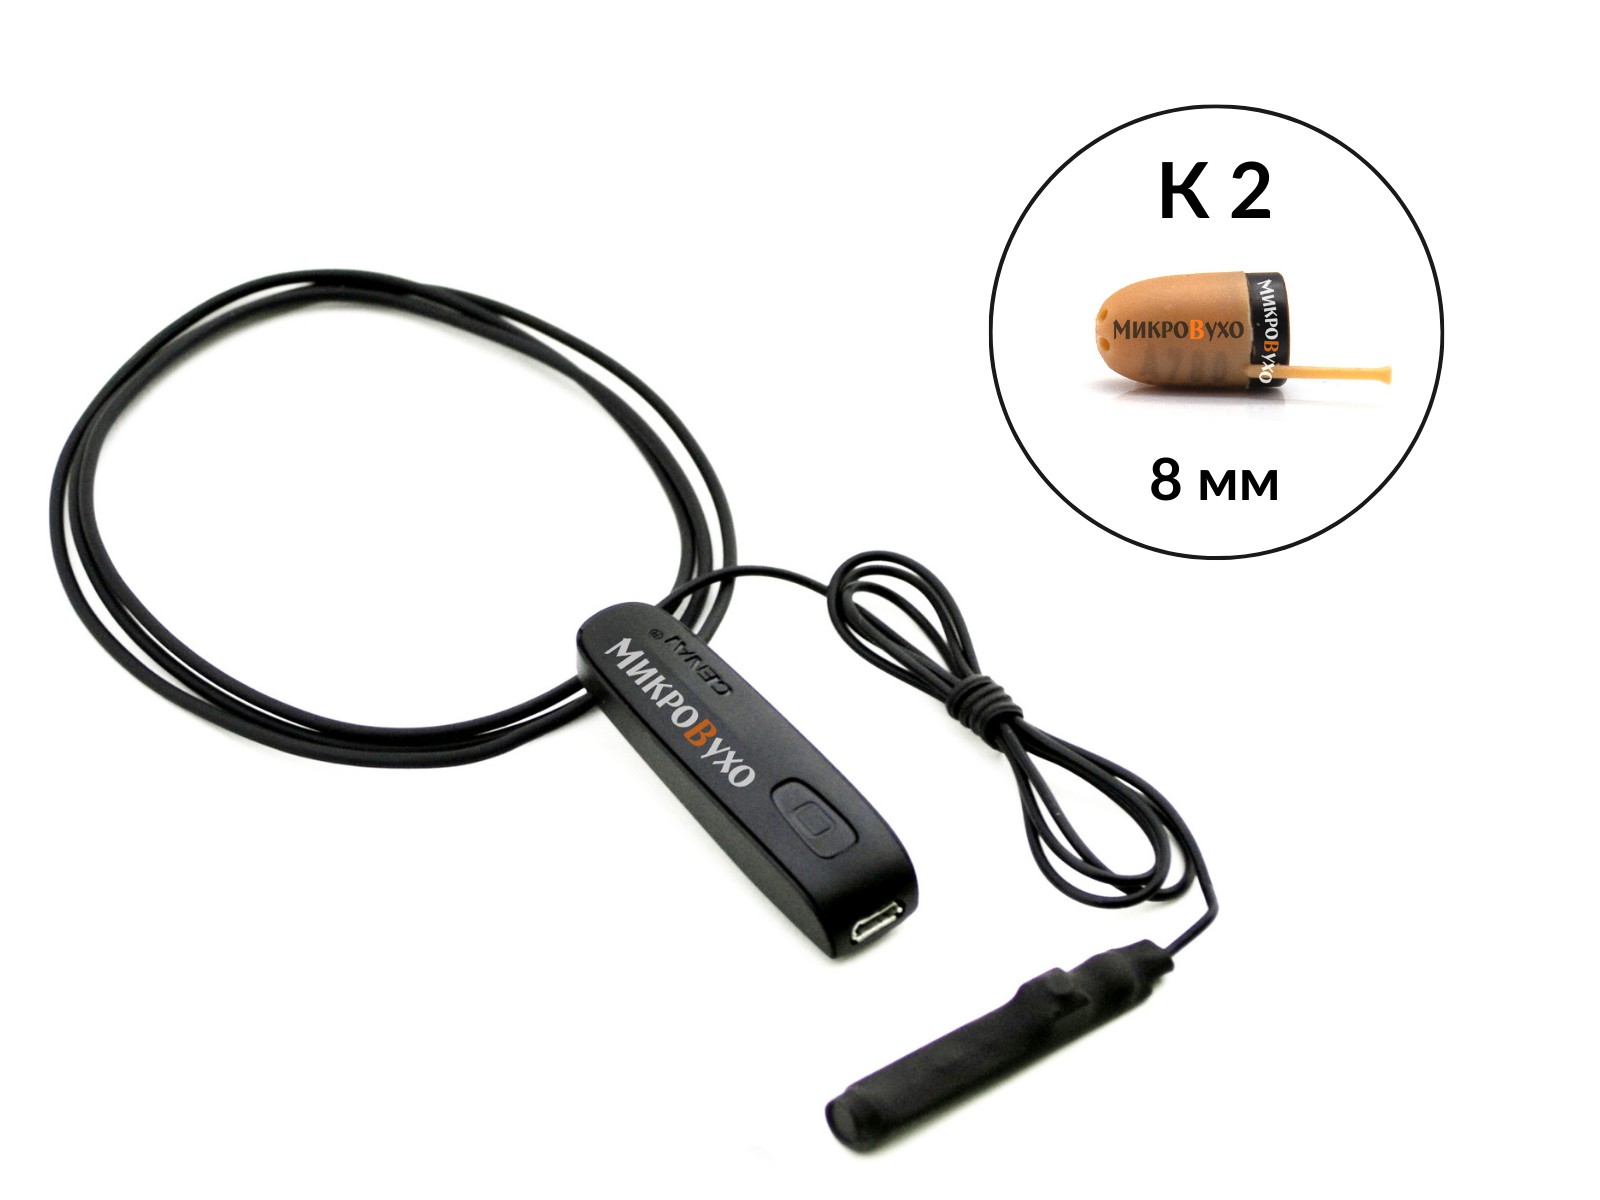 Гарнитура Bluetooth Basic c капсульным микронаушником K2 8 мм - изображение 2